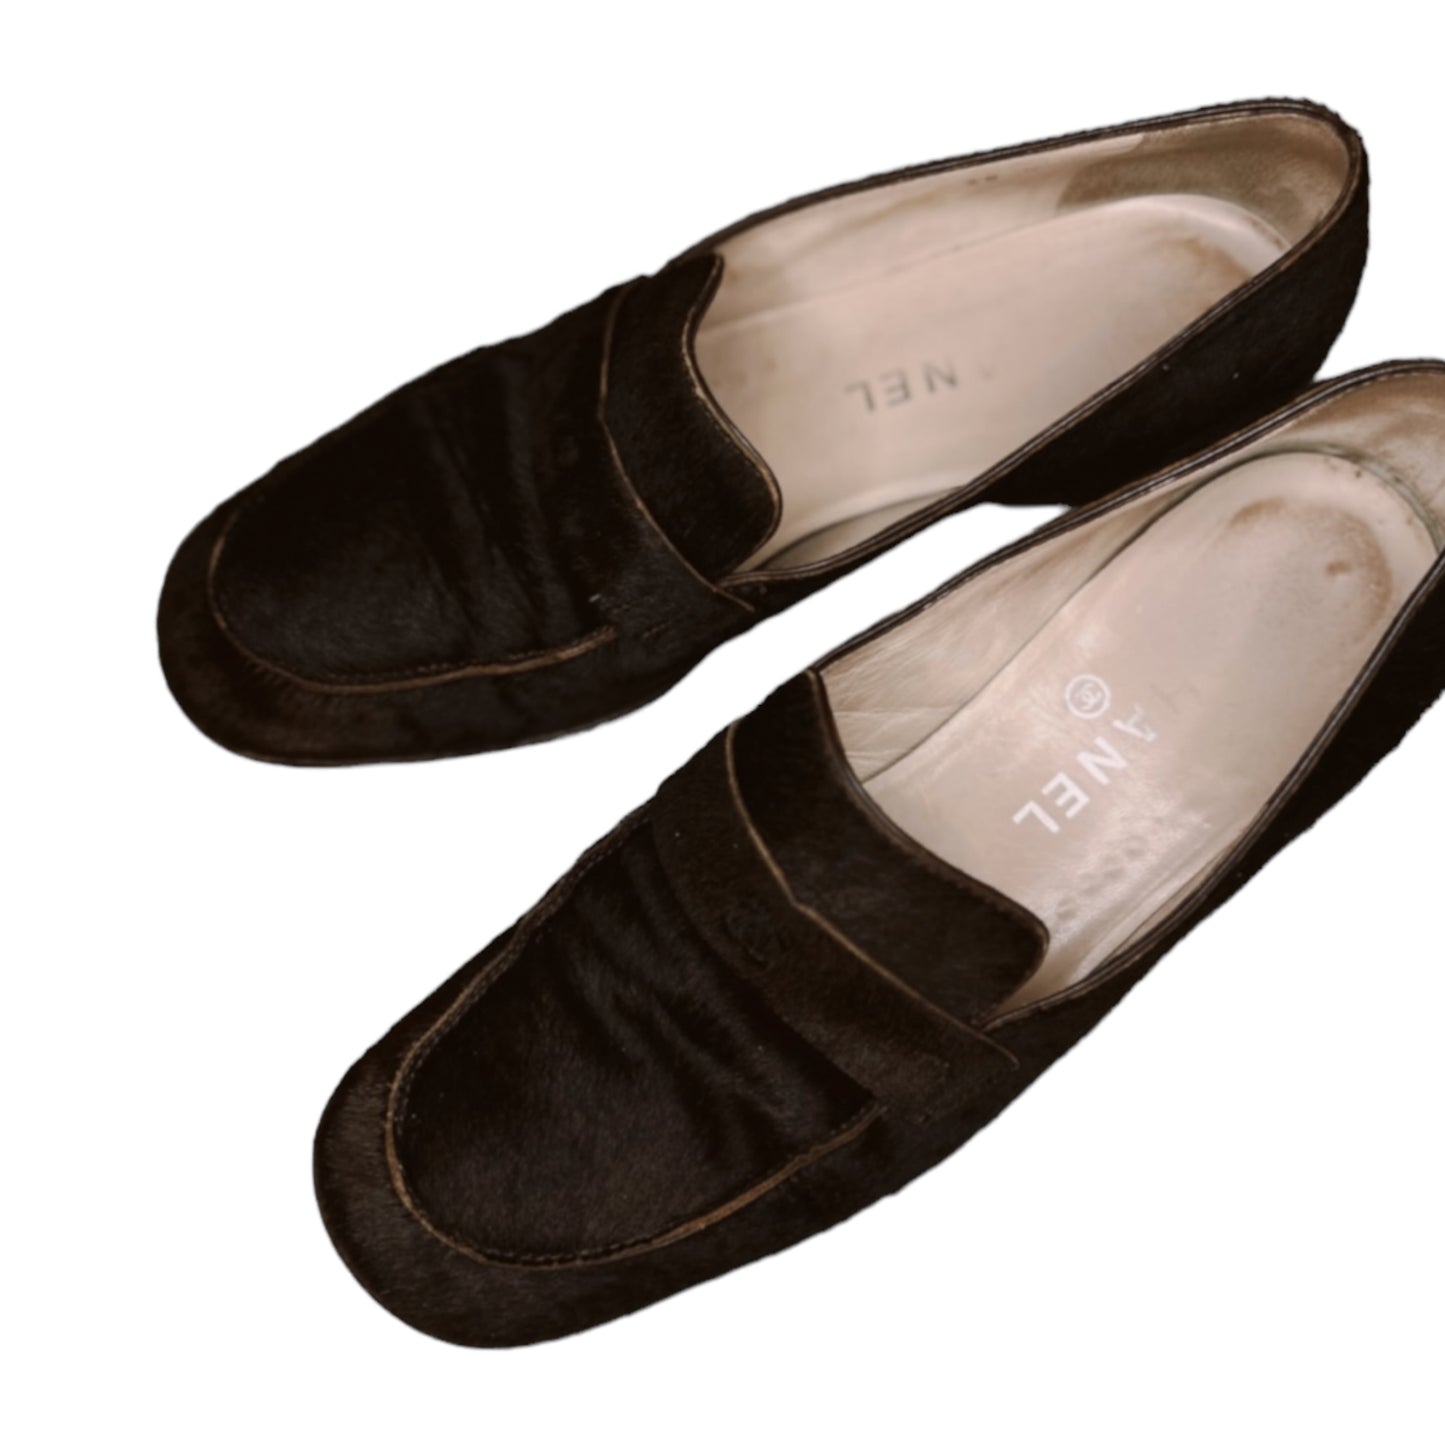 Vintage Chanel brown loafer